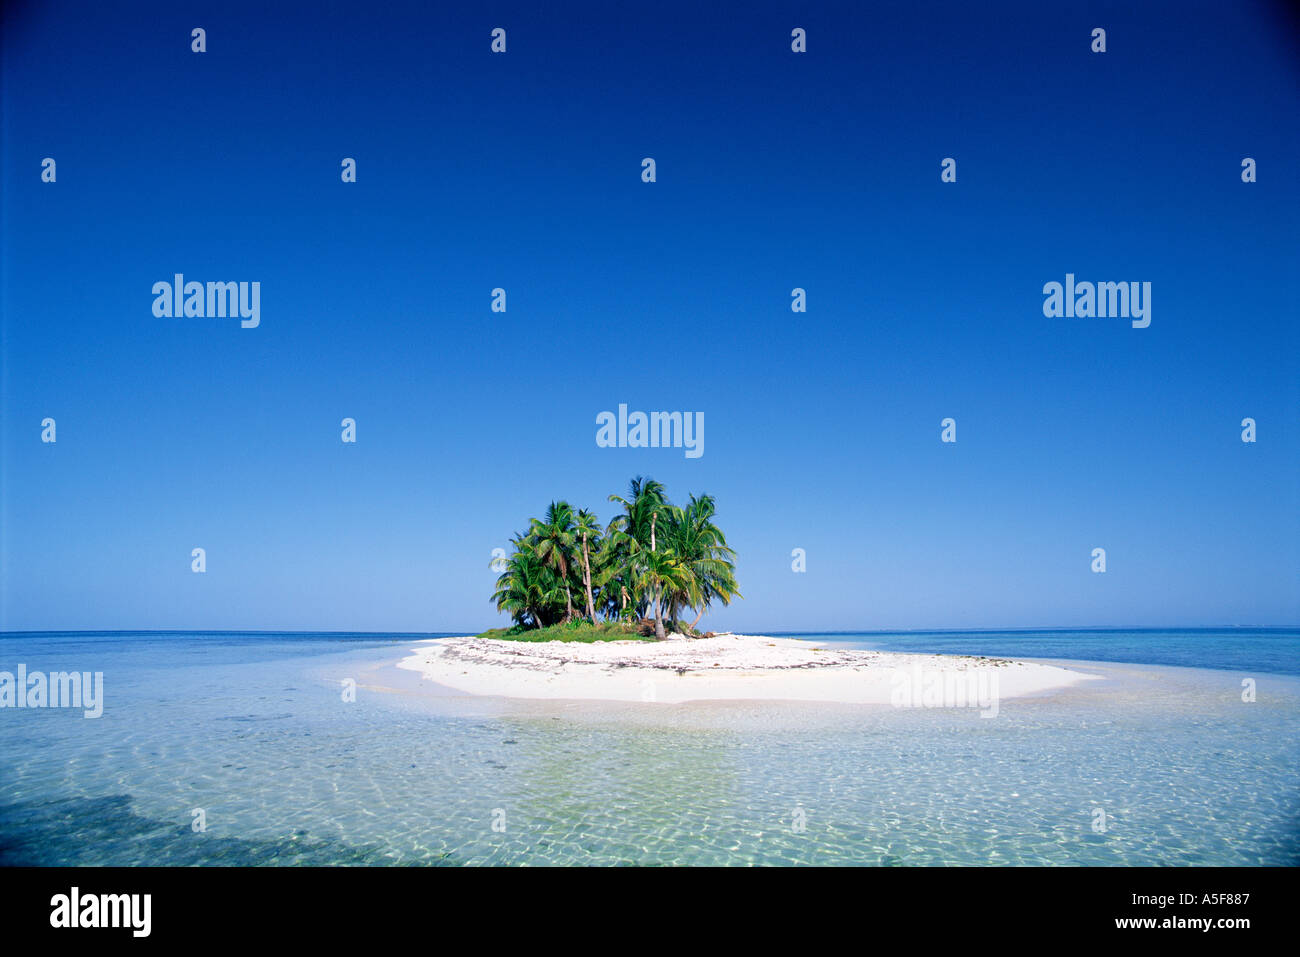 Petite île tropicale avec des palmiers à l'horizon au Belize Amérique centrale Caraïbes Banque D'Images